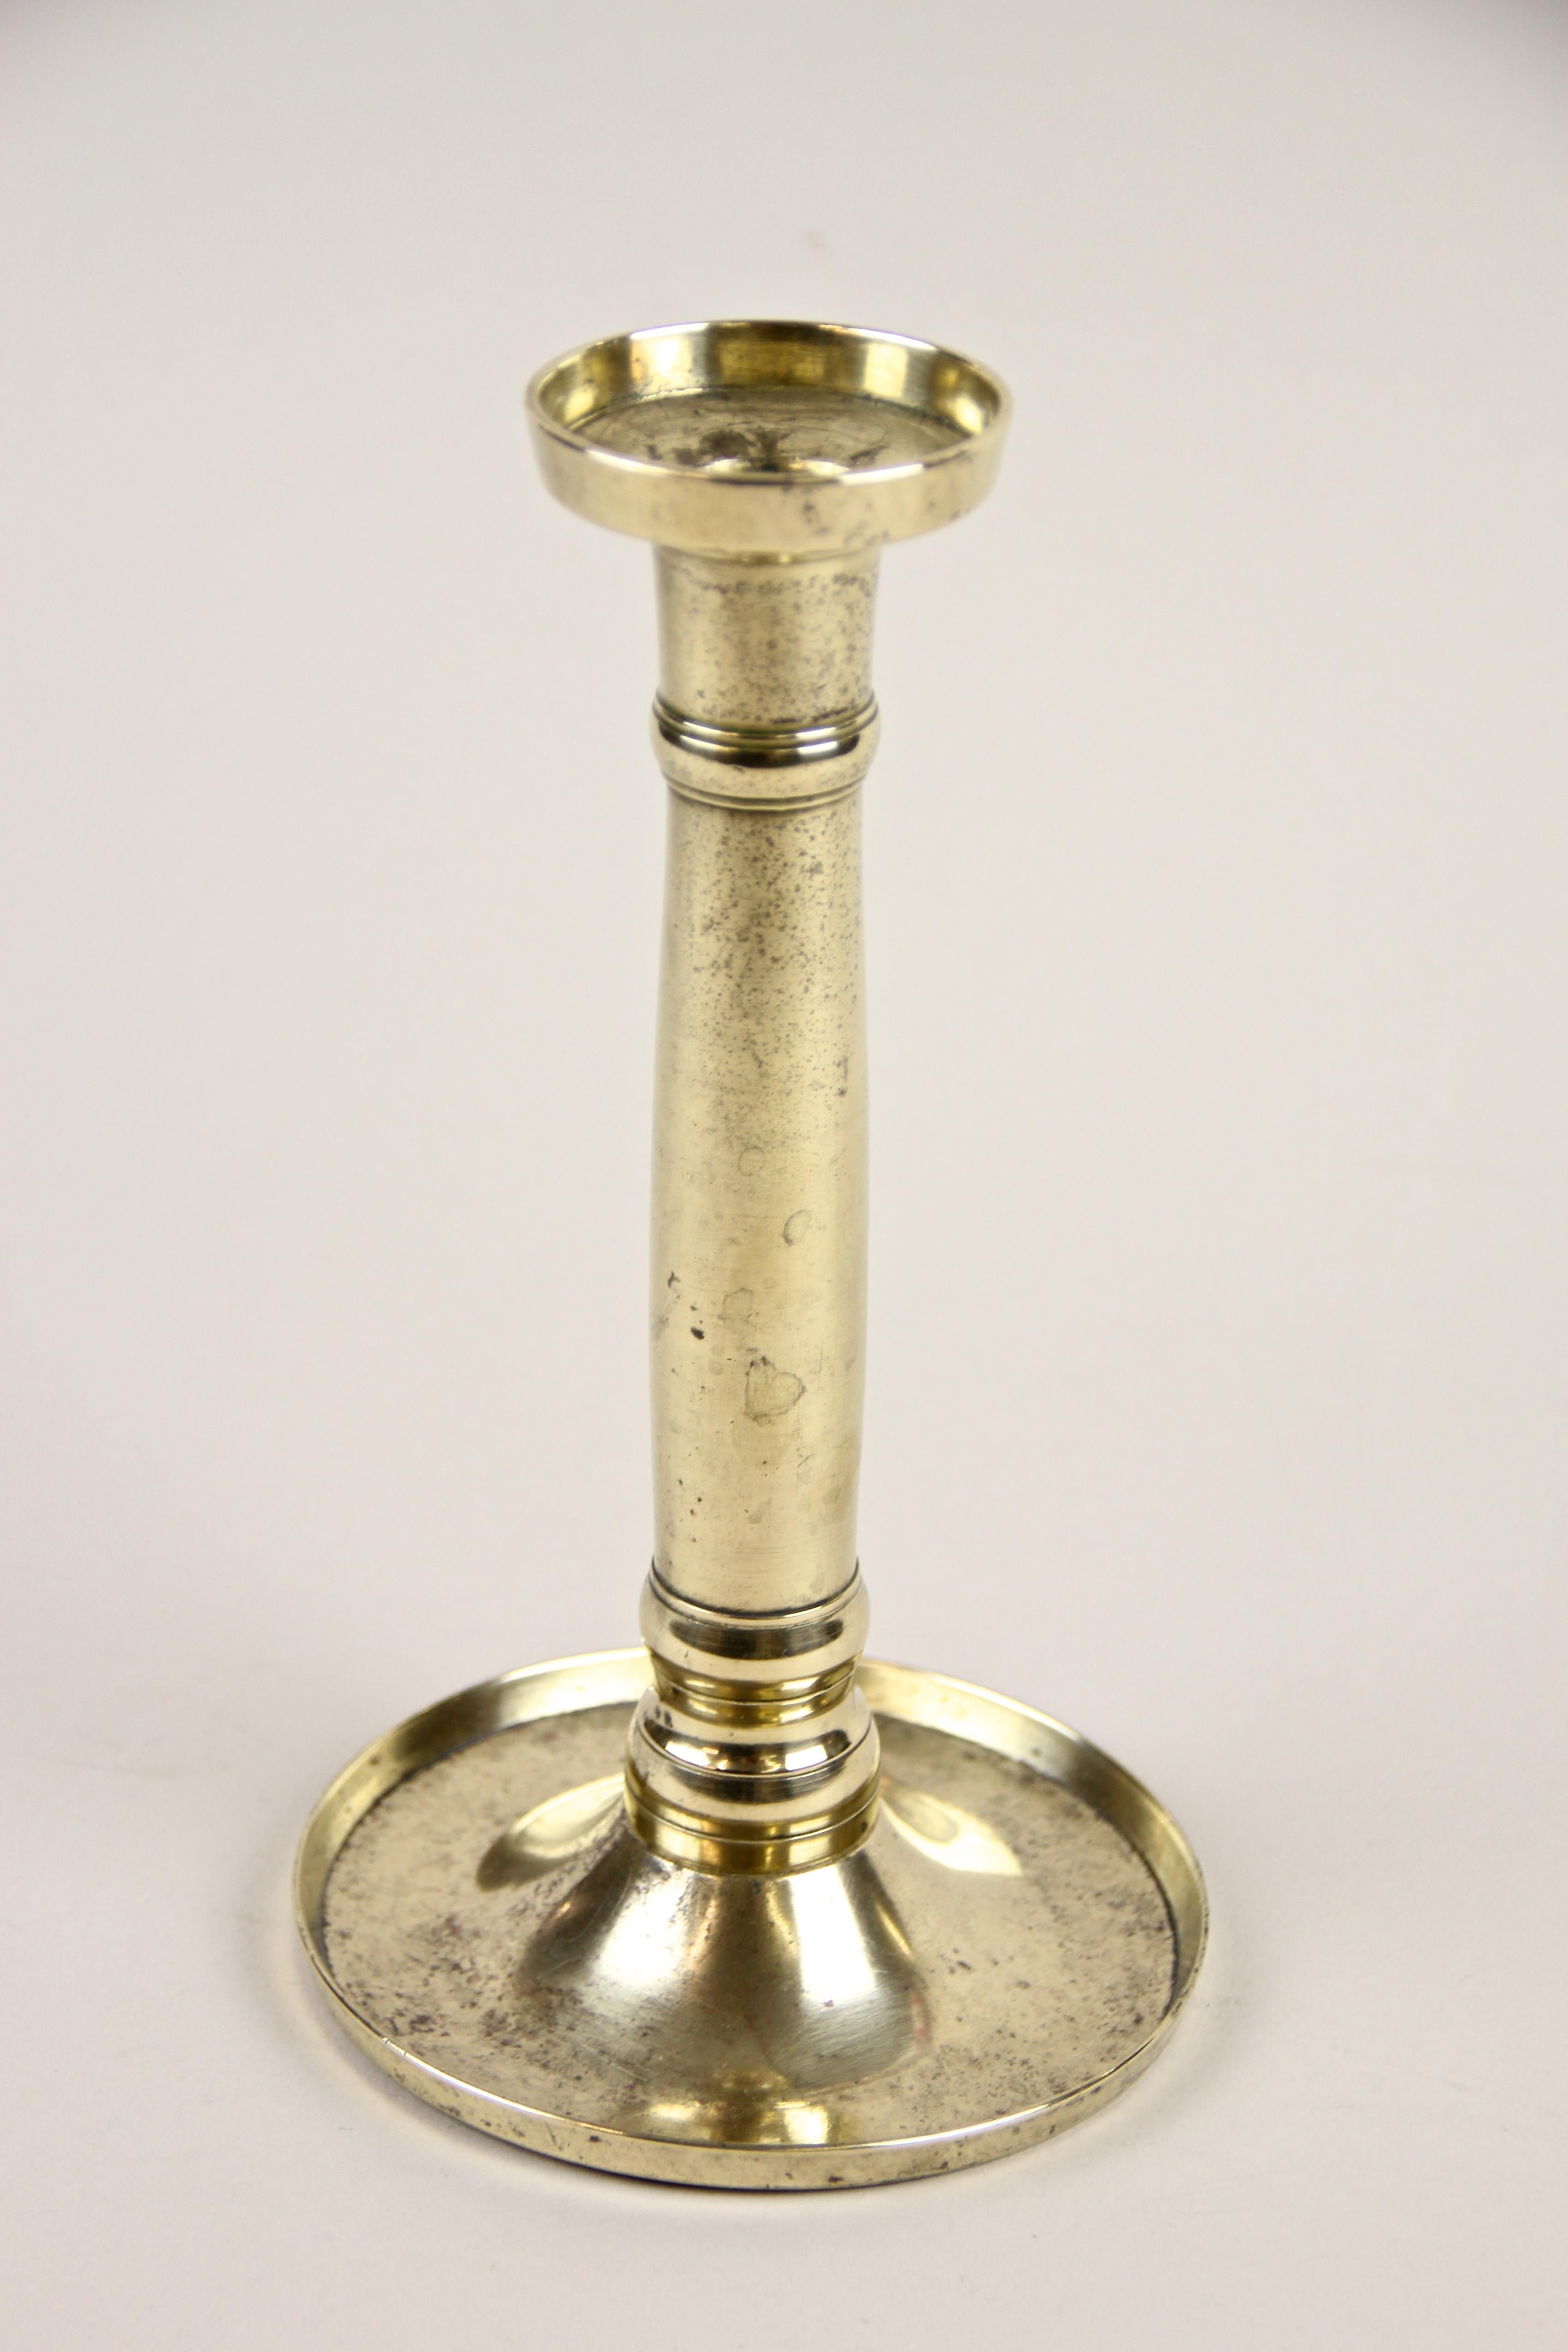 Feiner Biedermeier-Kerzenleuchter aus Messing aus dem 19. Jahrhundert, Österreich, um 1830. Eine gerade, klare Form, ein typisches Merkmal für das frühe Biedermeier, verarbeitet aus feinem Messing mit schönen Details, macht diesen antiken Leuchter